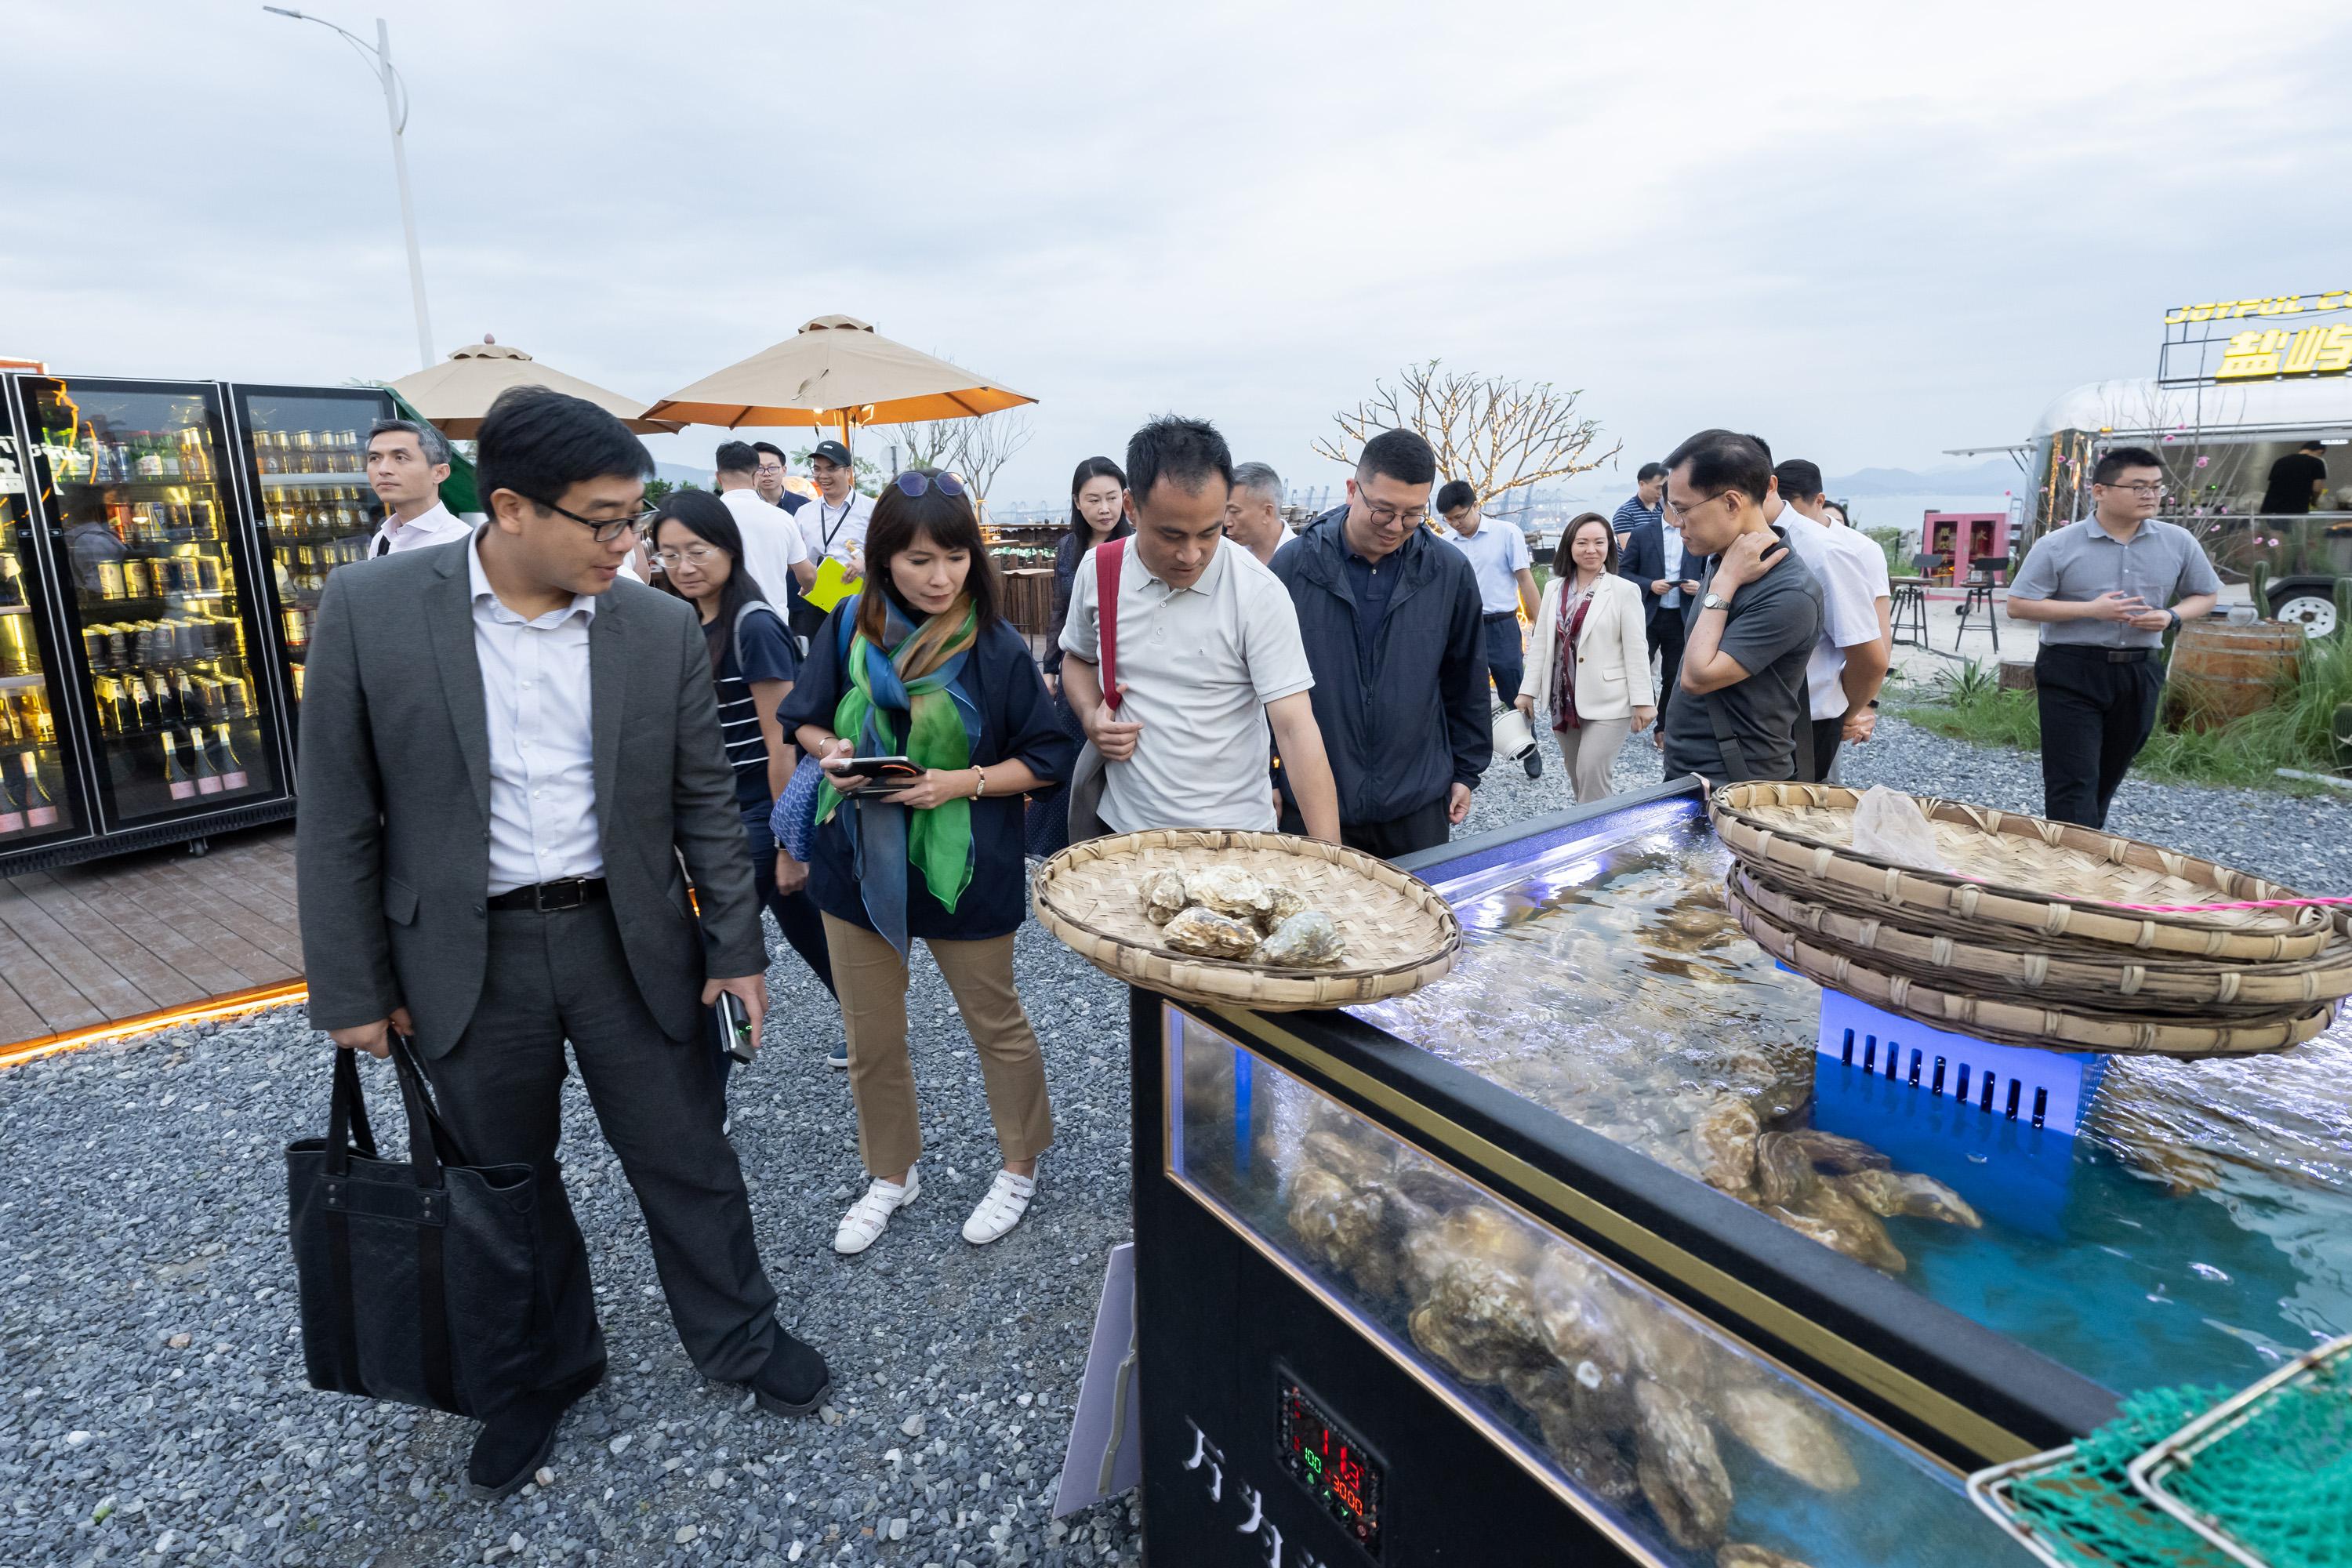 立法会北部都会区发展事宜小组委员会今日（五月九日）前往深圳考察生态旅游发展。图示议员于盐港夜巿了解其举办跨境美食节的经验。
